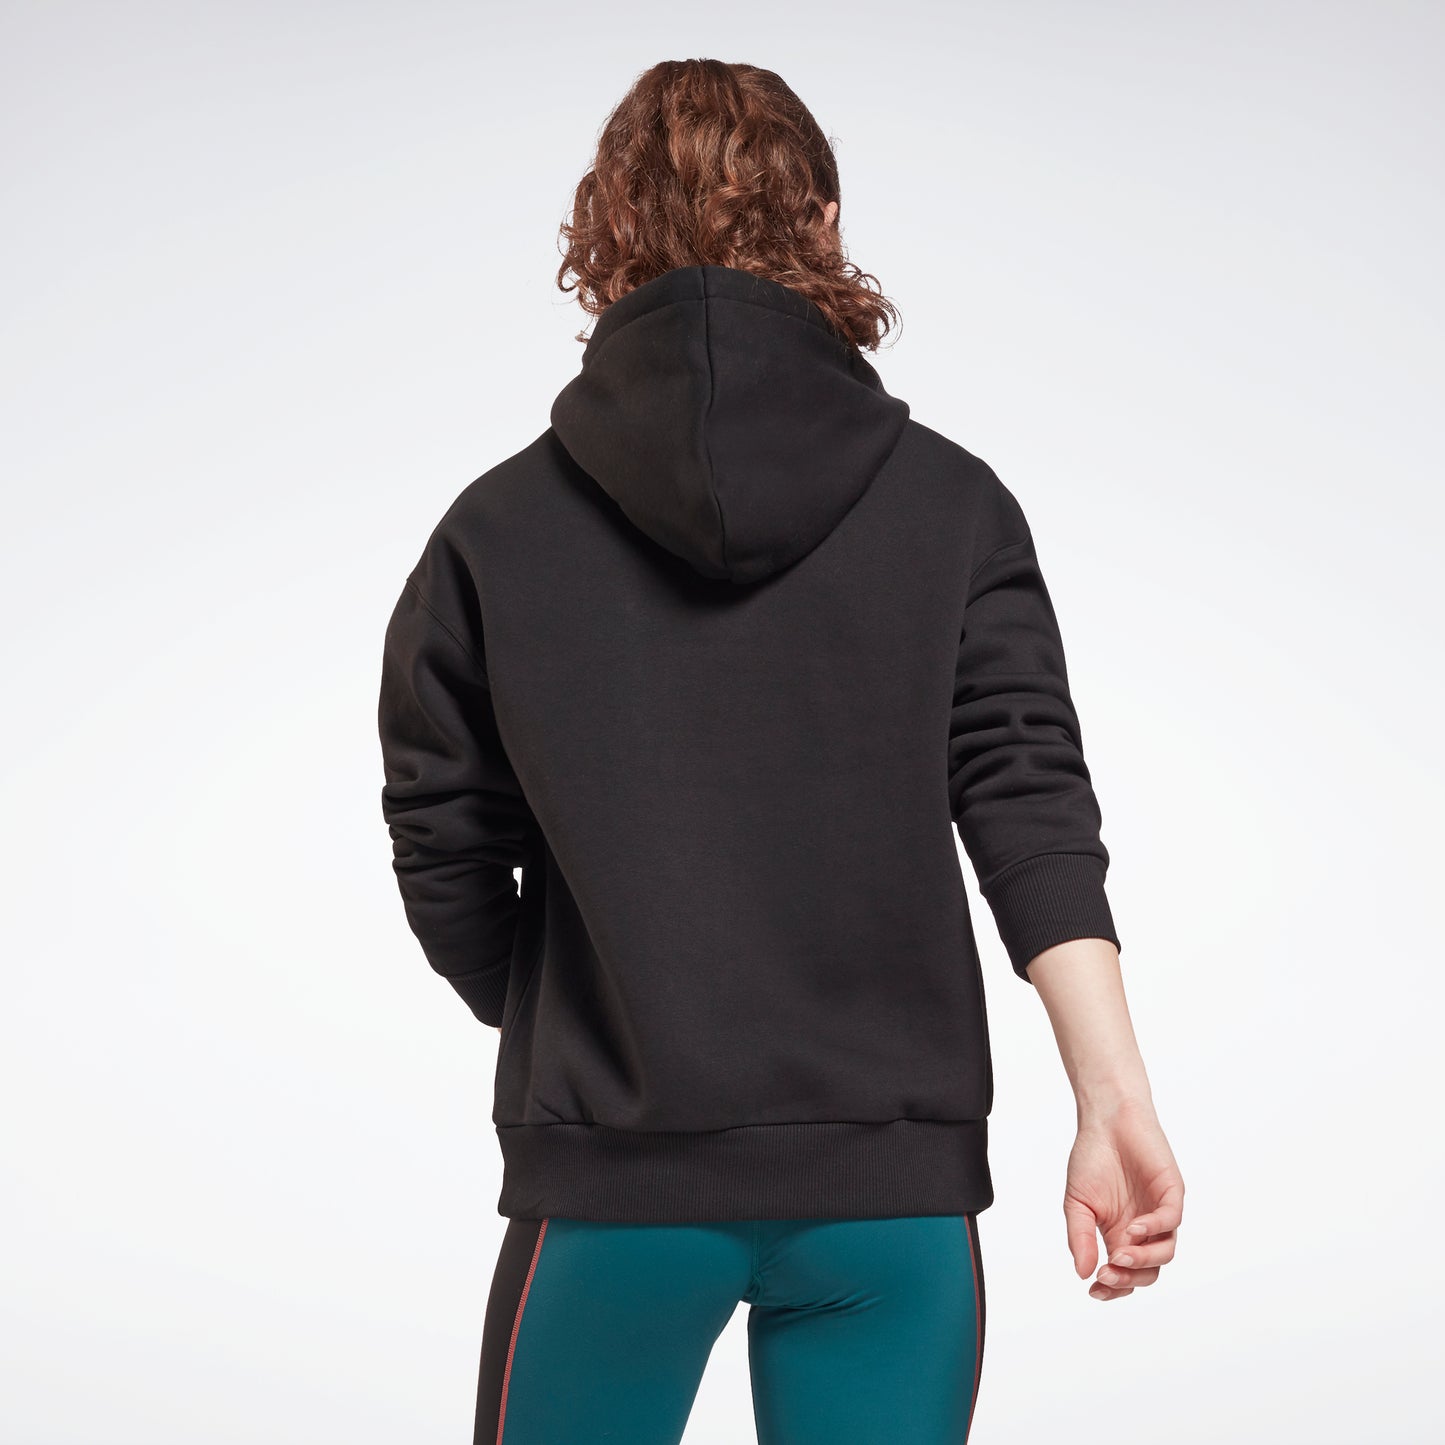 Reebok Women's Active Sweatshirt – Performance Fleece Zip Hoodie